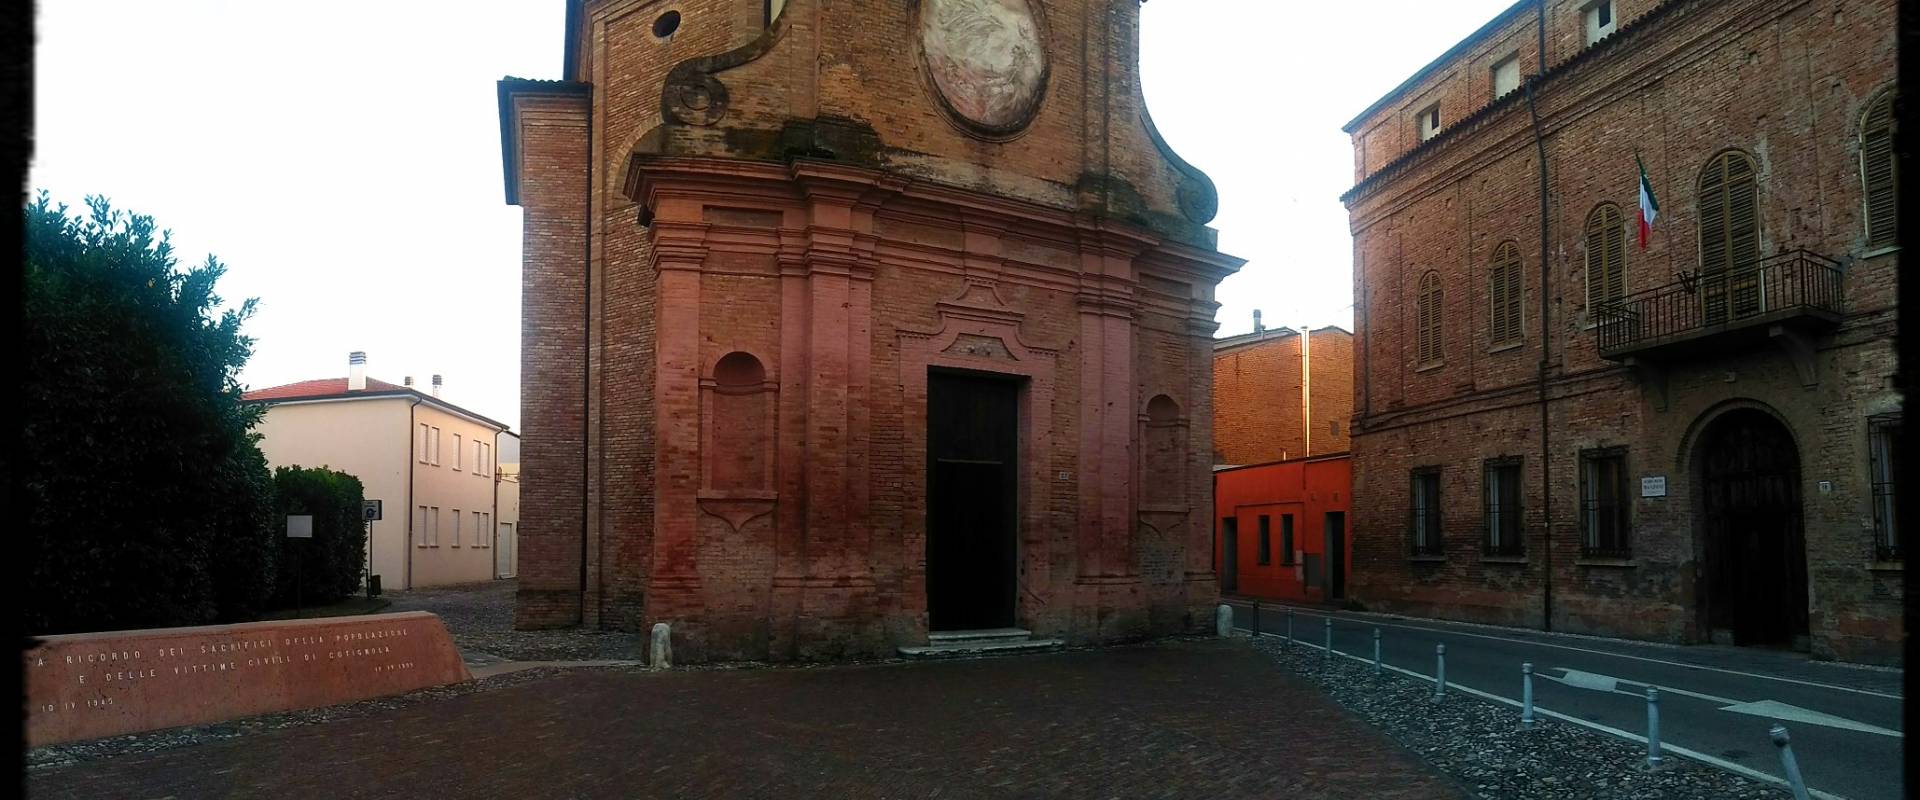 Chiesa del Suffragio, Cotignola - XVIII secolo photo by Lomargraphics